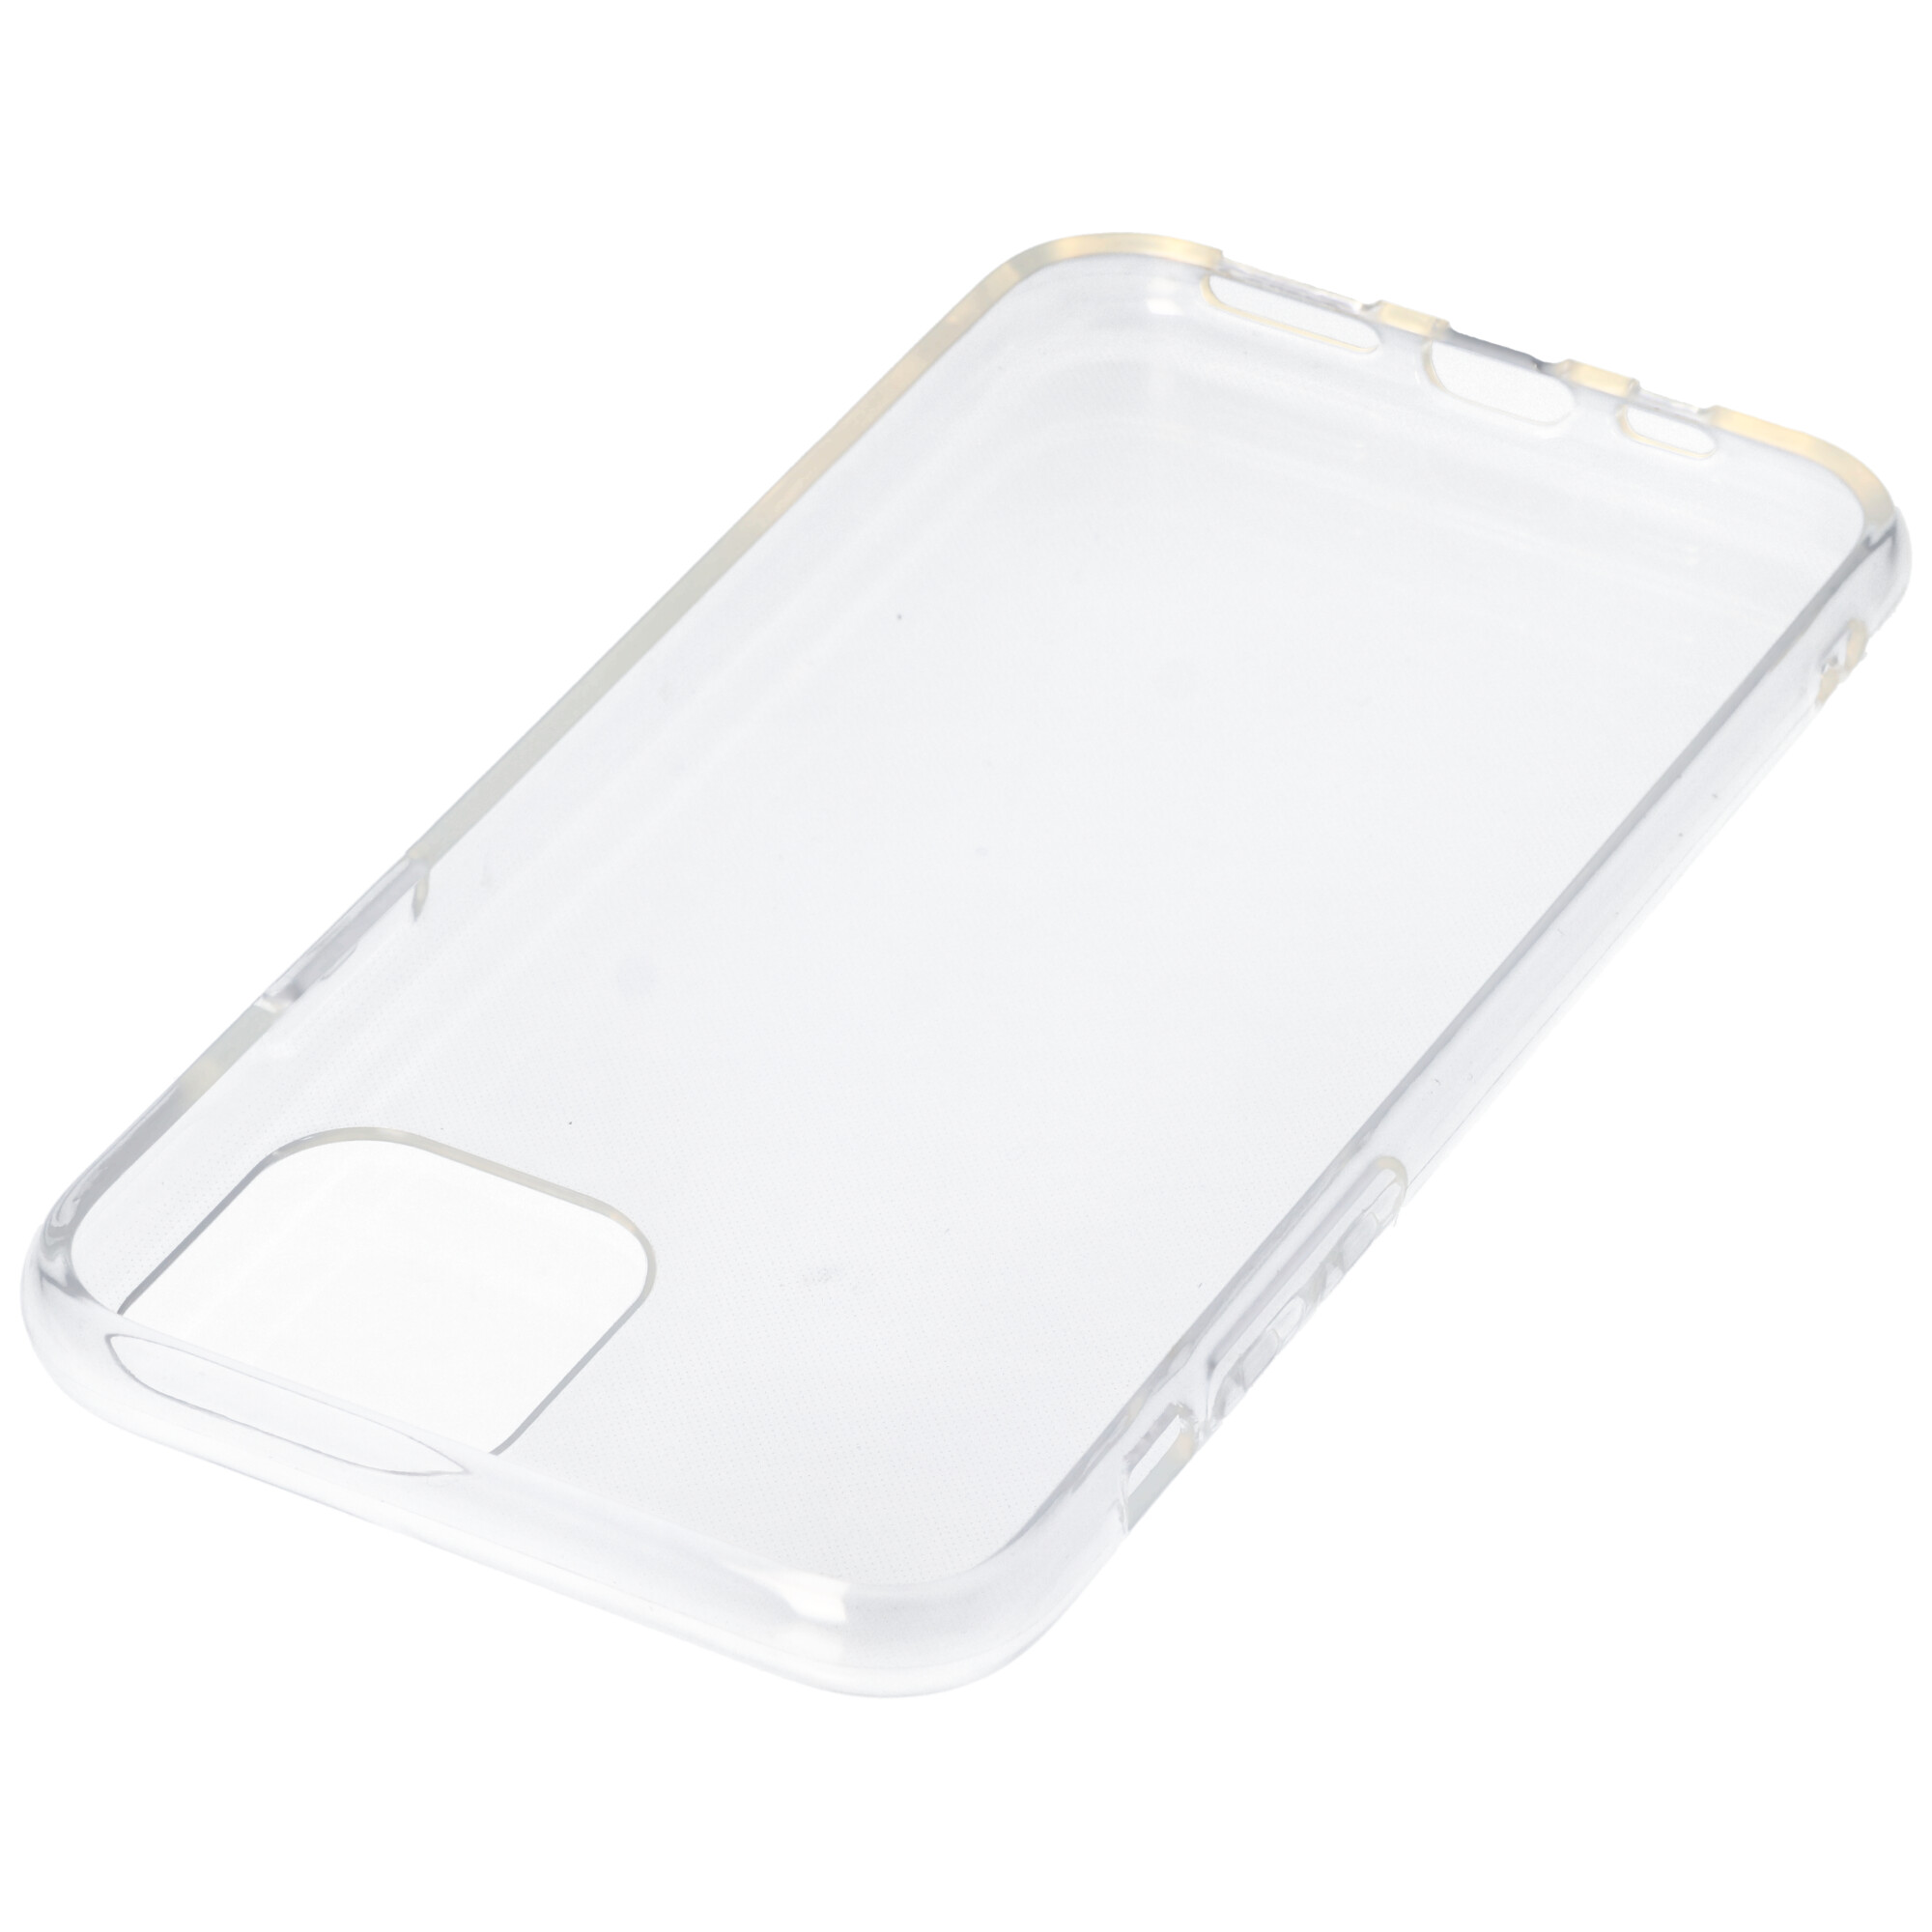 Hülle passend für Apple iPhone 11 Pro - transparente Schutzhülle, Anti-Gelb Luftkissen Fallschutz Silikon Handyhülle robustes TPU Case